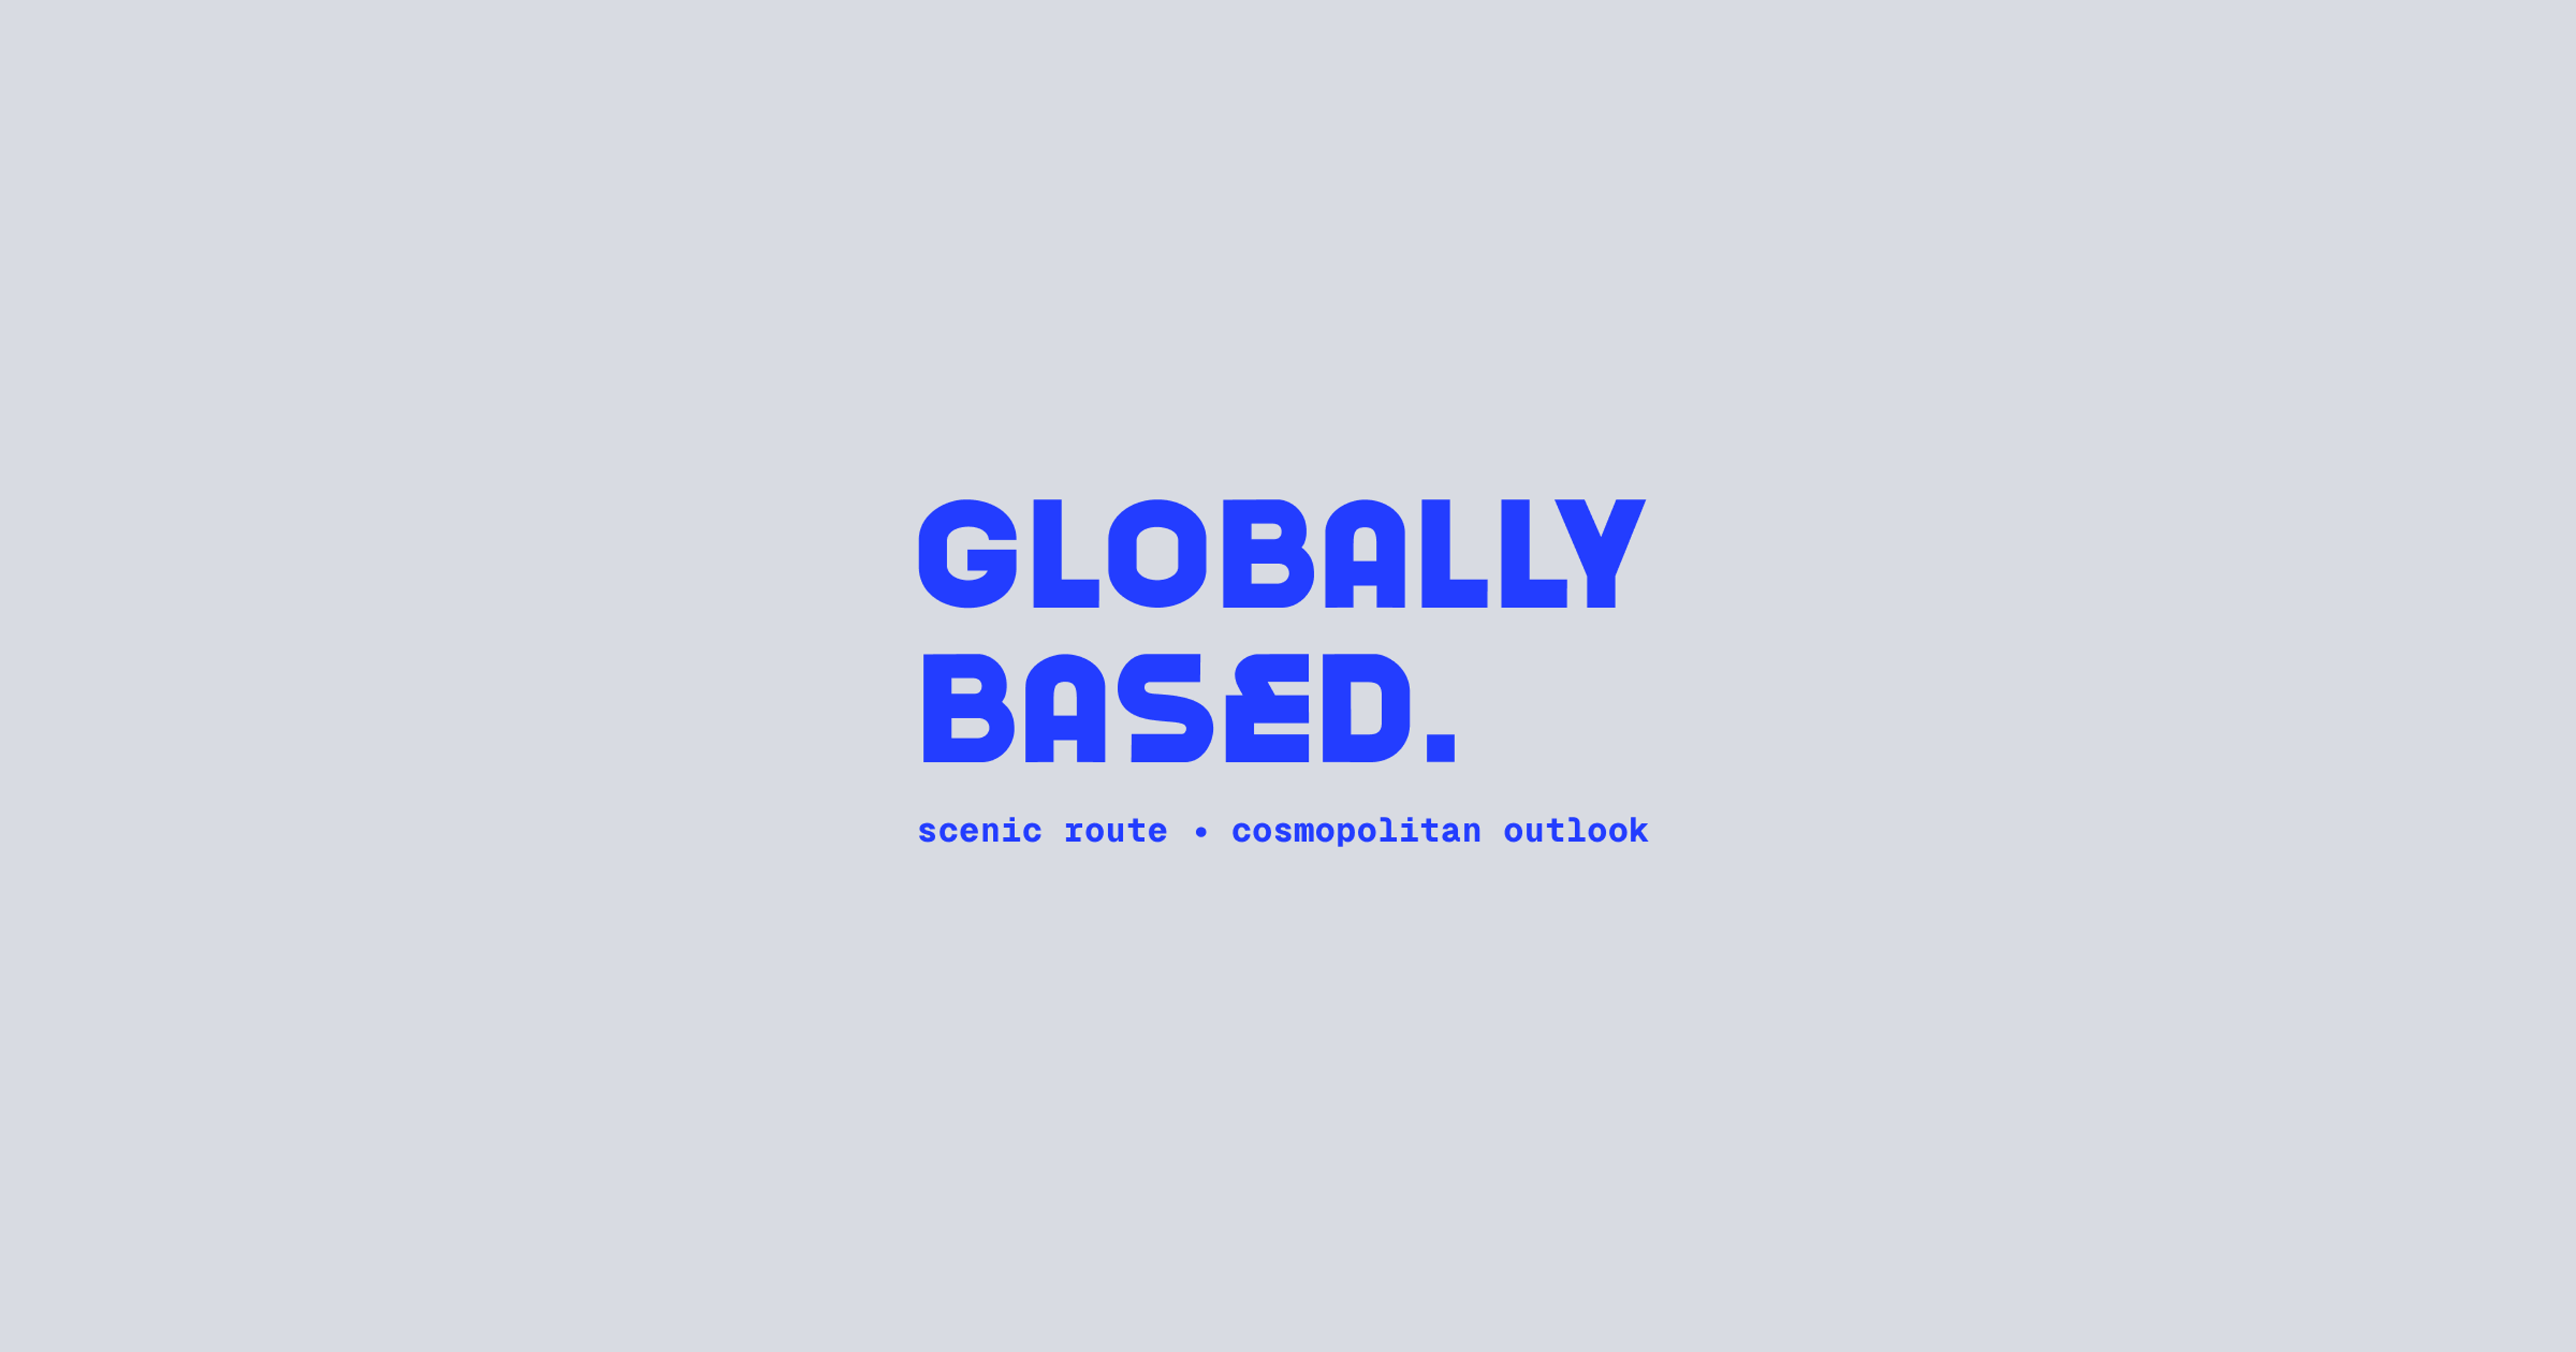 Globally Based travel newsletter cover